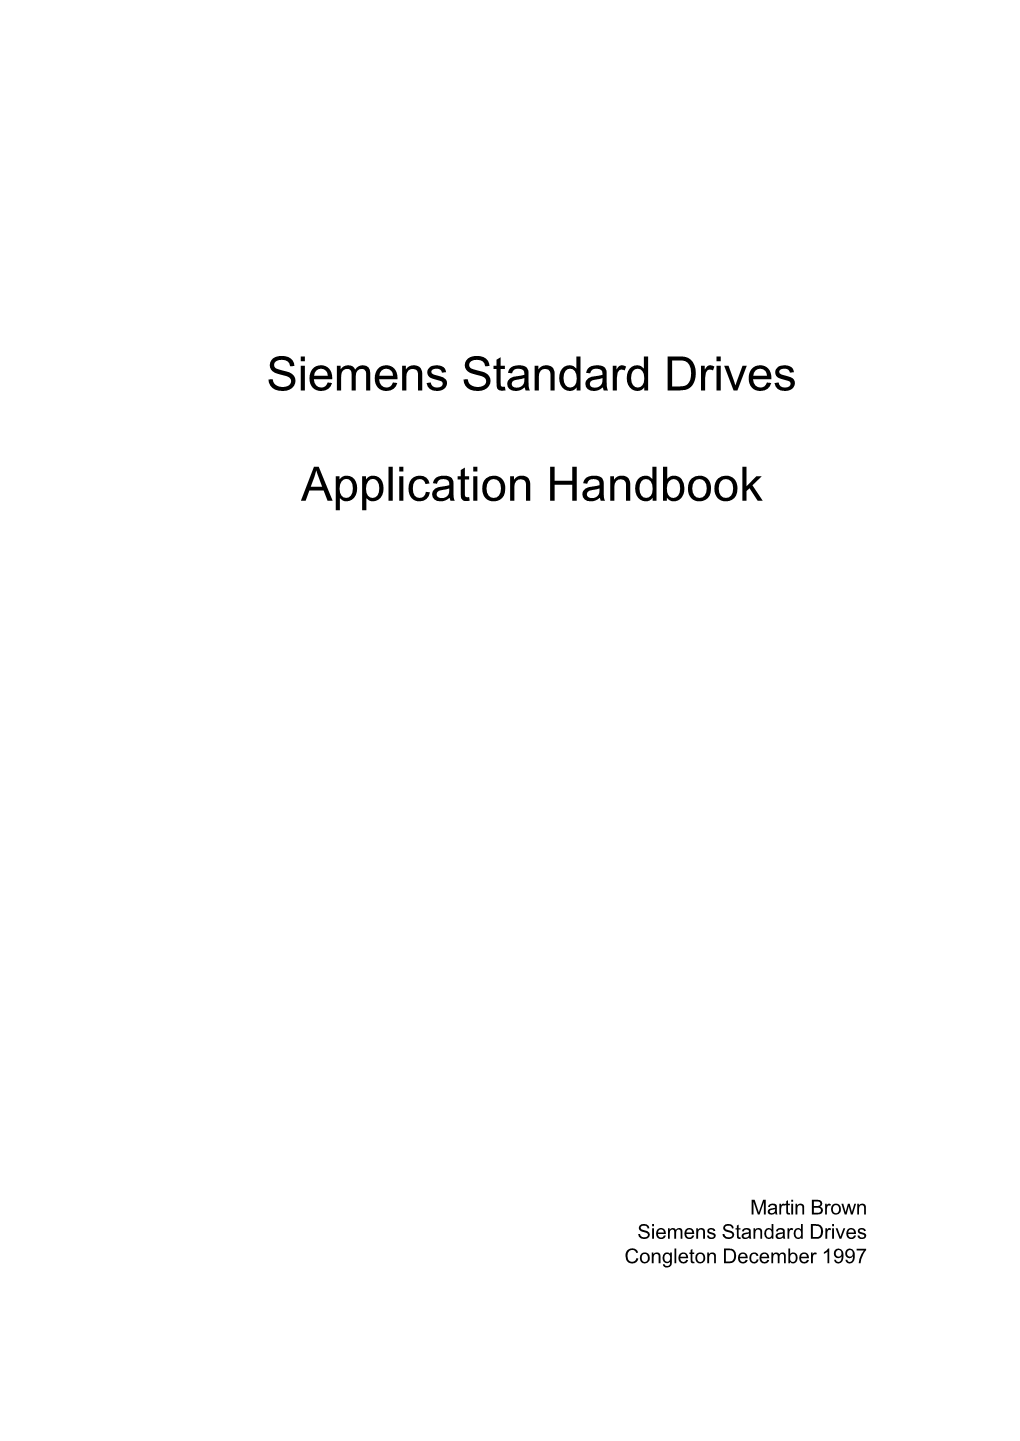 Siemens Standard Drives Application Handbook